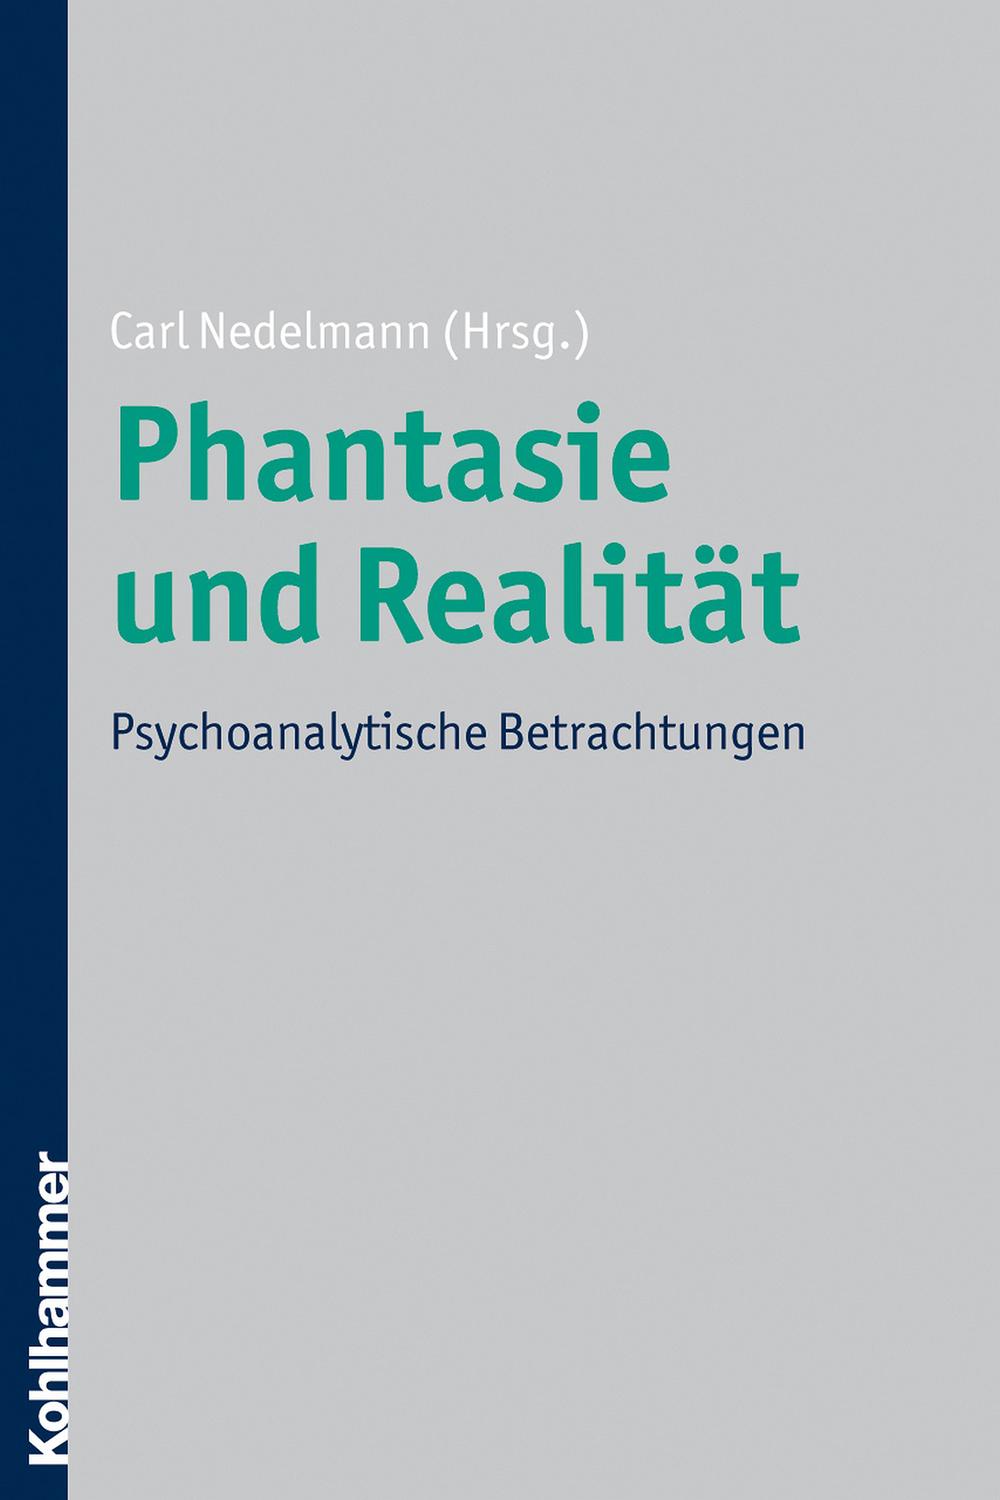 Phantasie und Realität - Carl Nedelmann